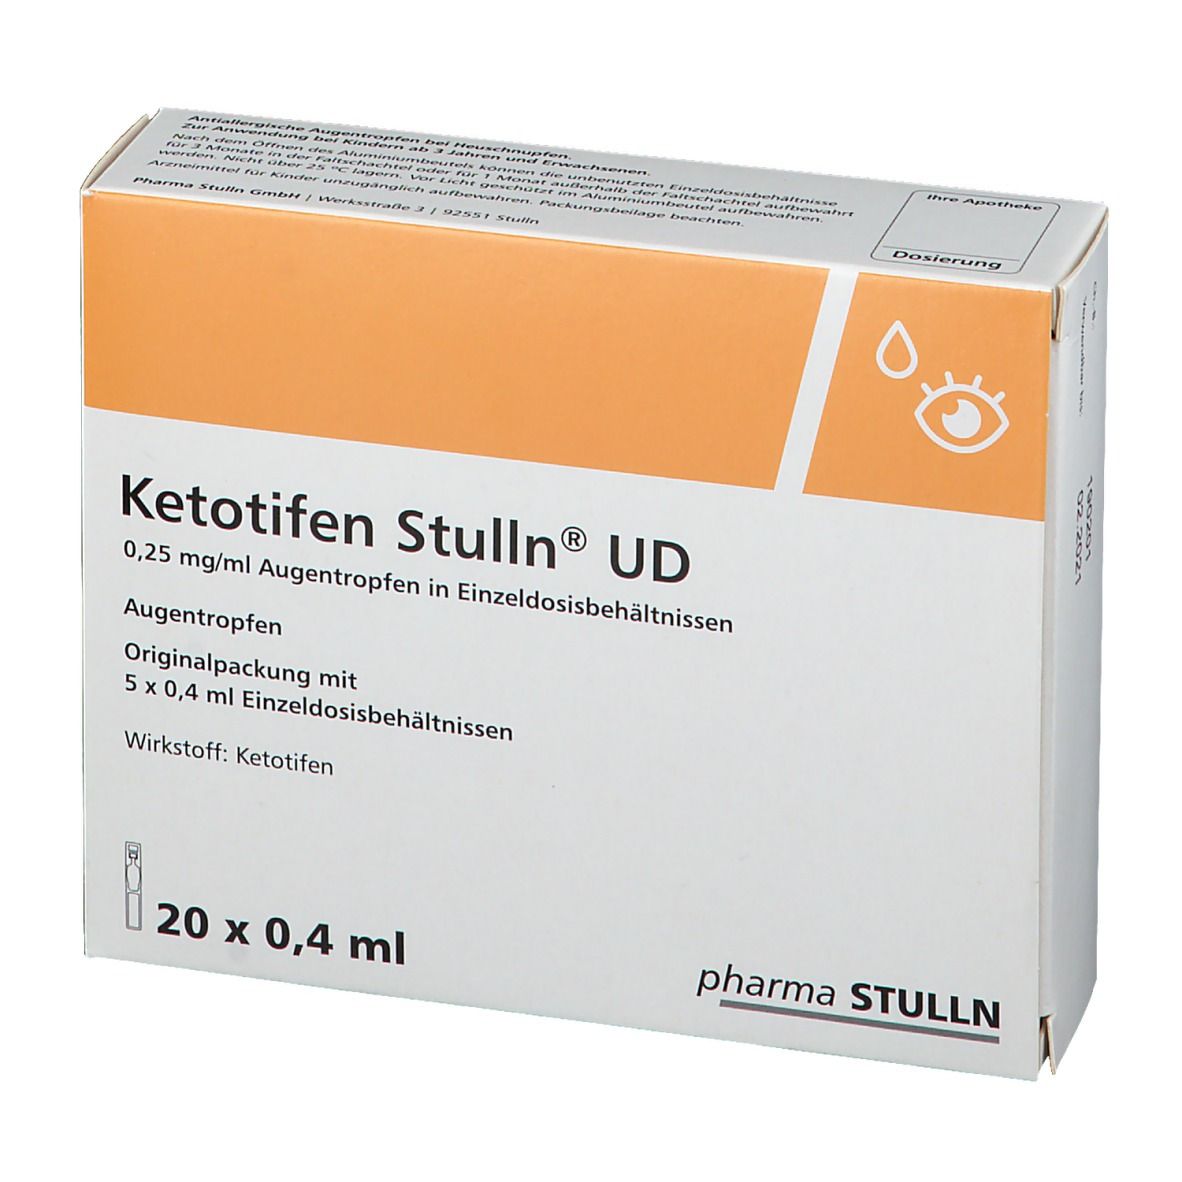 Ketotifen Stulln® UD Augentropfen